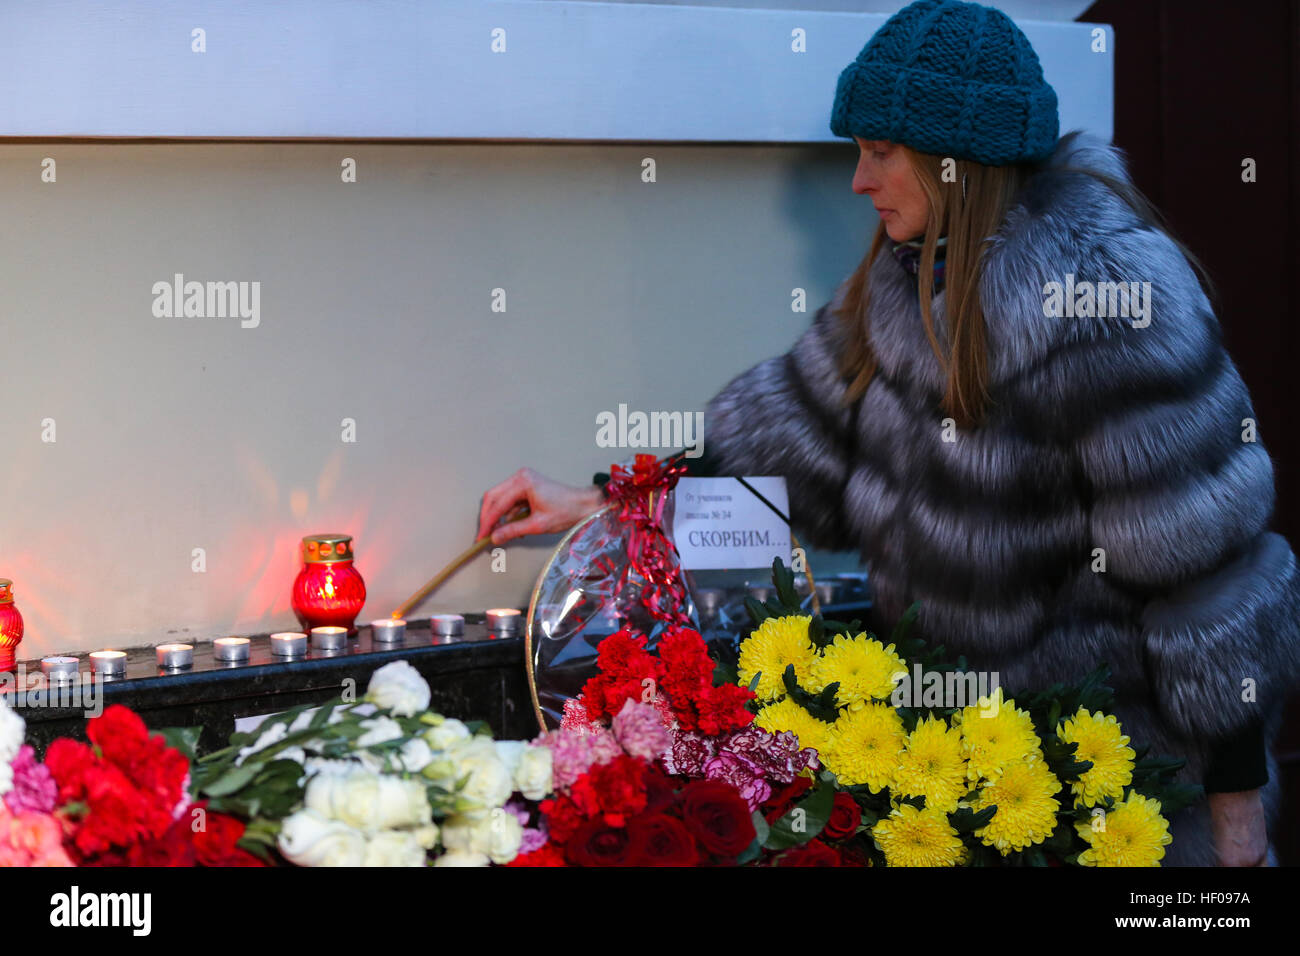 Moscou, Russie. 25 Décembre, 2016. Les gens jette près de bougies Alexandrov Hall, une salle de répétition de l'Ensemble Alexandrov, qu'ils rendent hommage aux victimes d'un accident d'avion du ministère russe de la Défense. Un avion Tupolev Tu-154 du ministère russe de la défense avec 92 personnes à bord s'est écrasé dans la mer Noire près de la ville de Sotchi le 25 décembre 2016. L'avion transportait des membres de l'Ensemble Alexandrov, des militaires russes et des journalistes à la base aérienne de Hmeymim en Syrie. Des fragments de l'avion ont été trouvés à environ 1,5 km de littoral Sotchi. © Victor Vytolskiy/Alamy Live News Banque D'Images